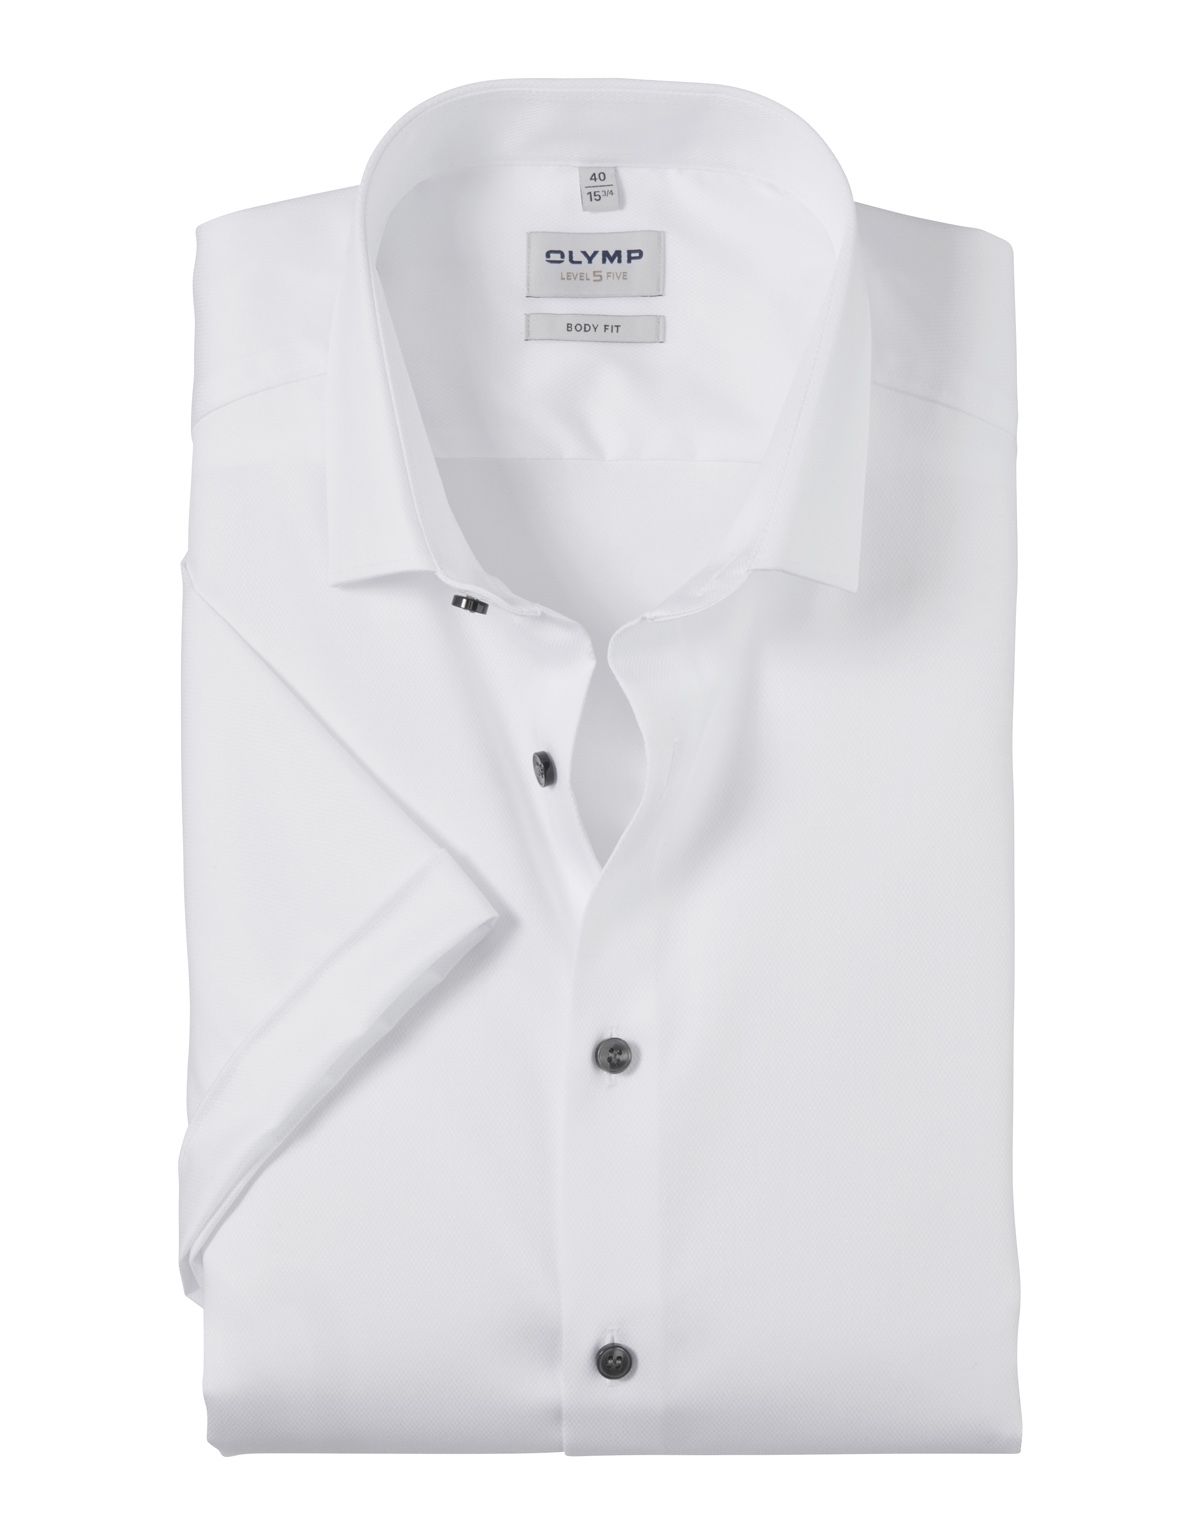 Рубашка мужская приталенная OLYMP Level Five с коротким рукавом[БЕЛЫЙ]